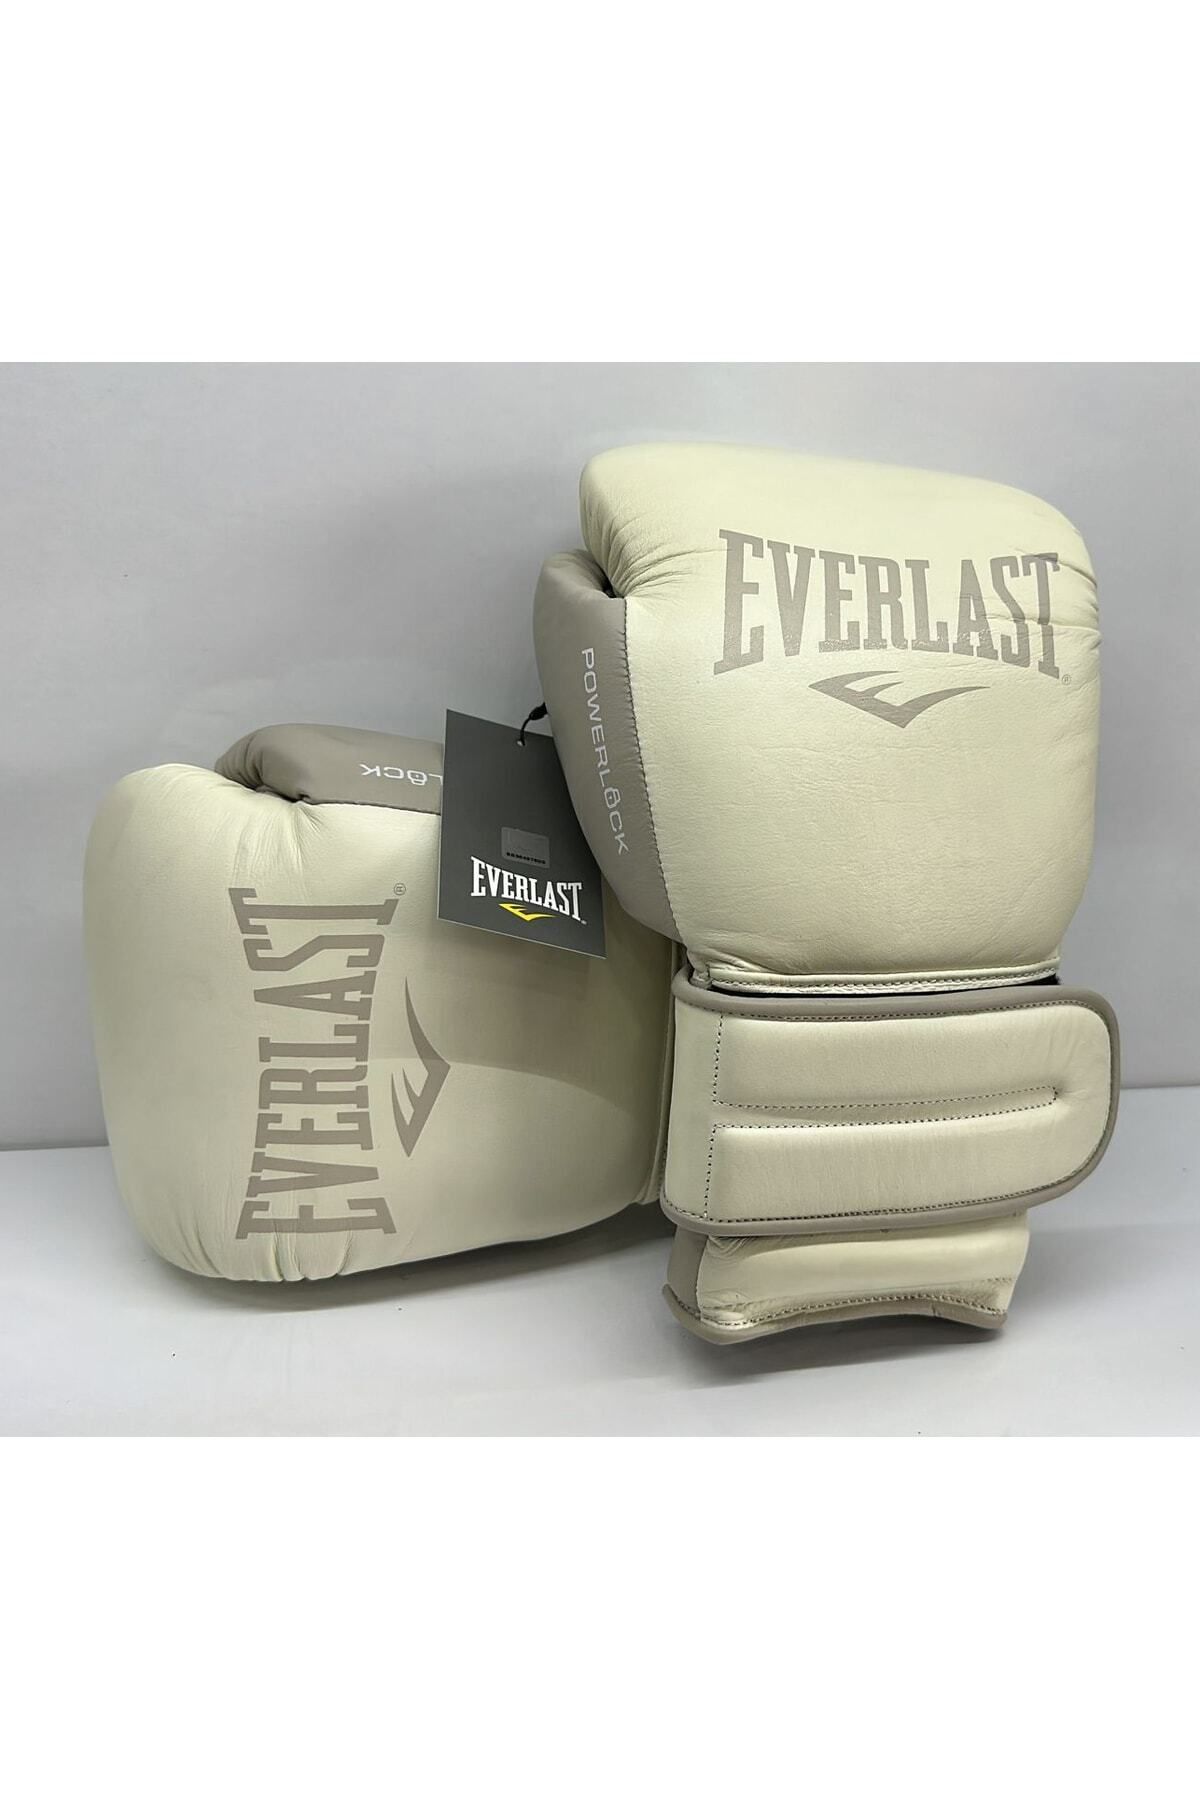 Everlast Powerlock 2 Hook&loop 12oz Training Gloves Boks Eldiveni 870482-70-12